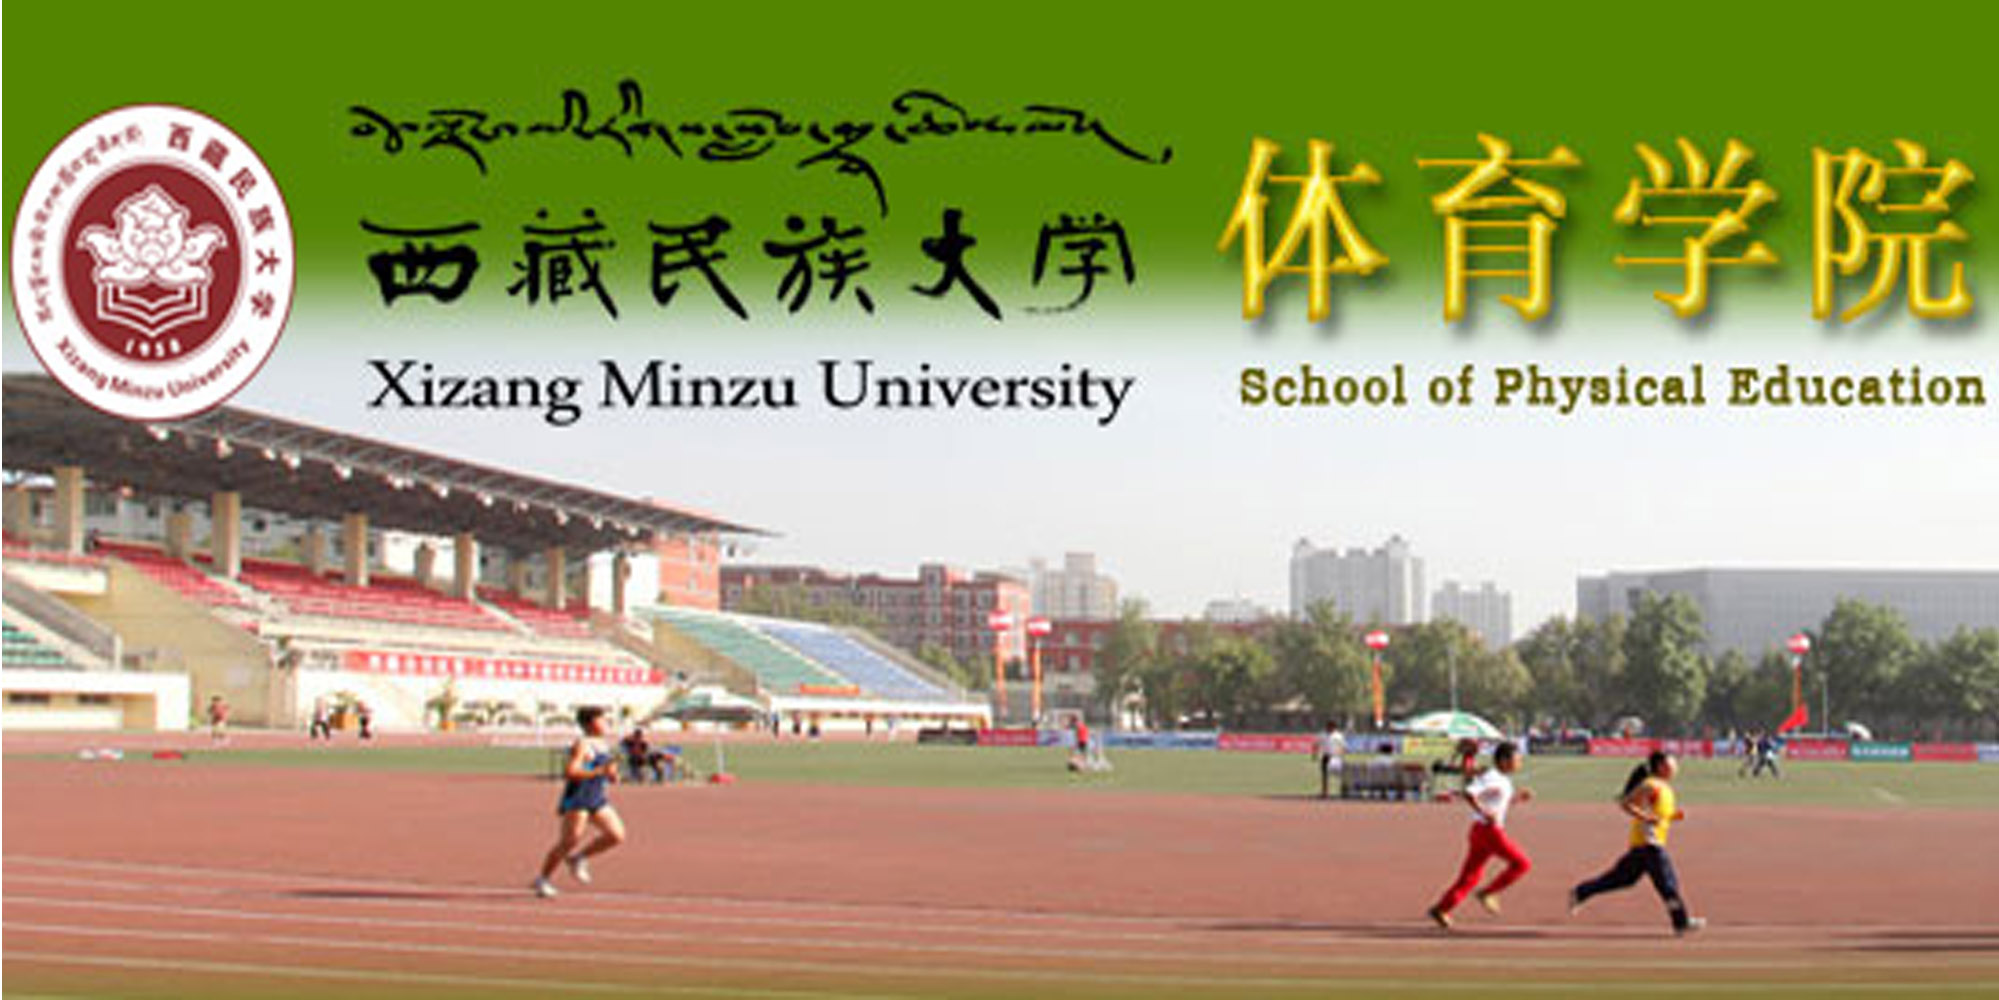 西藏民族大學體育學院